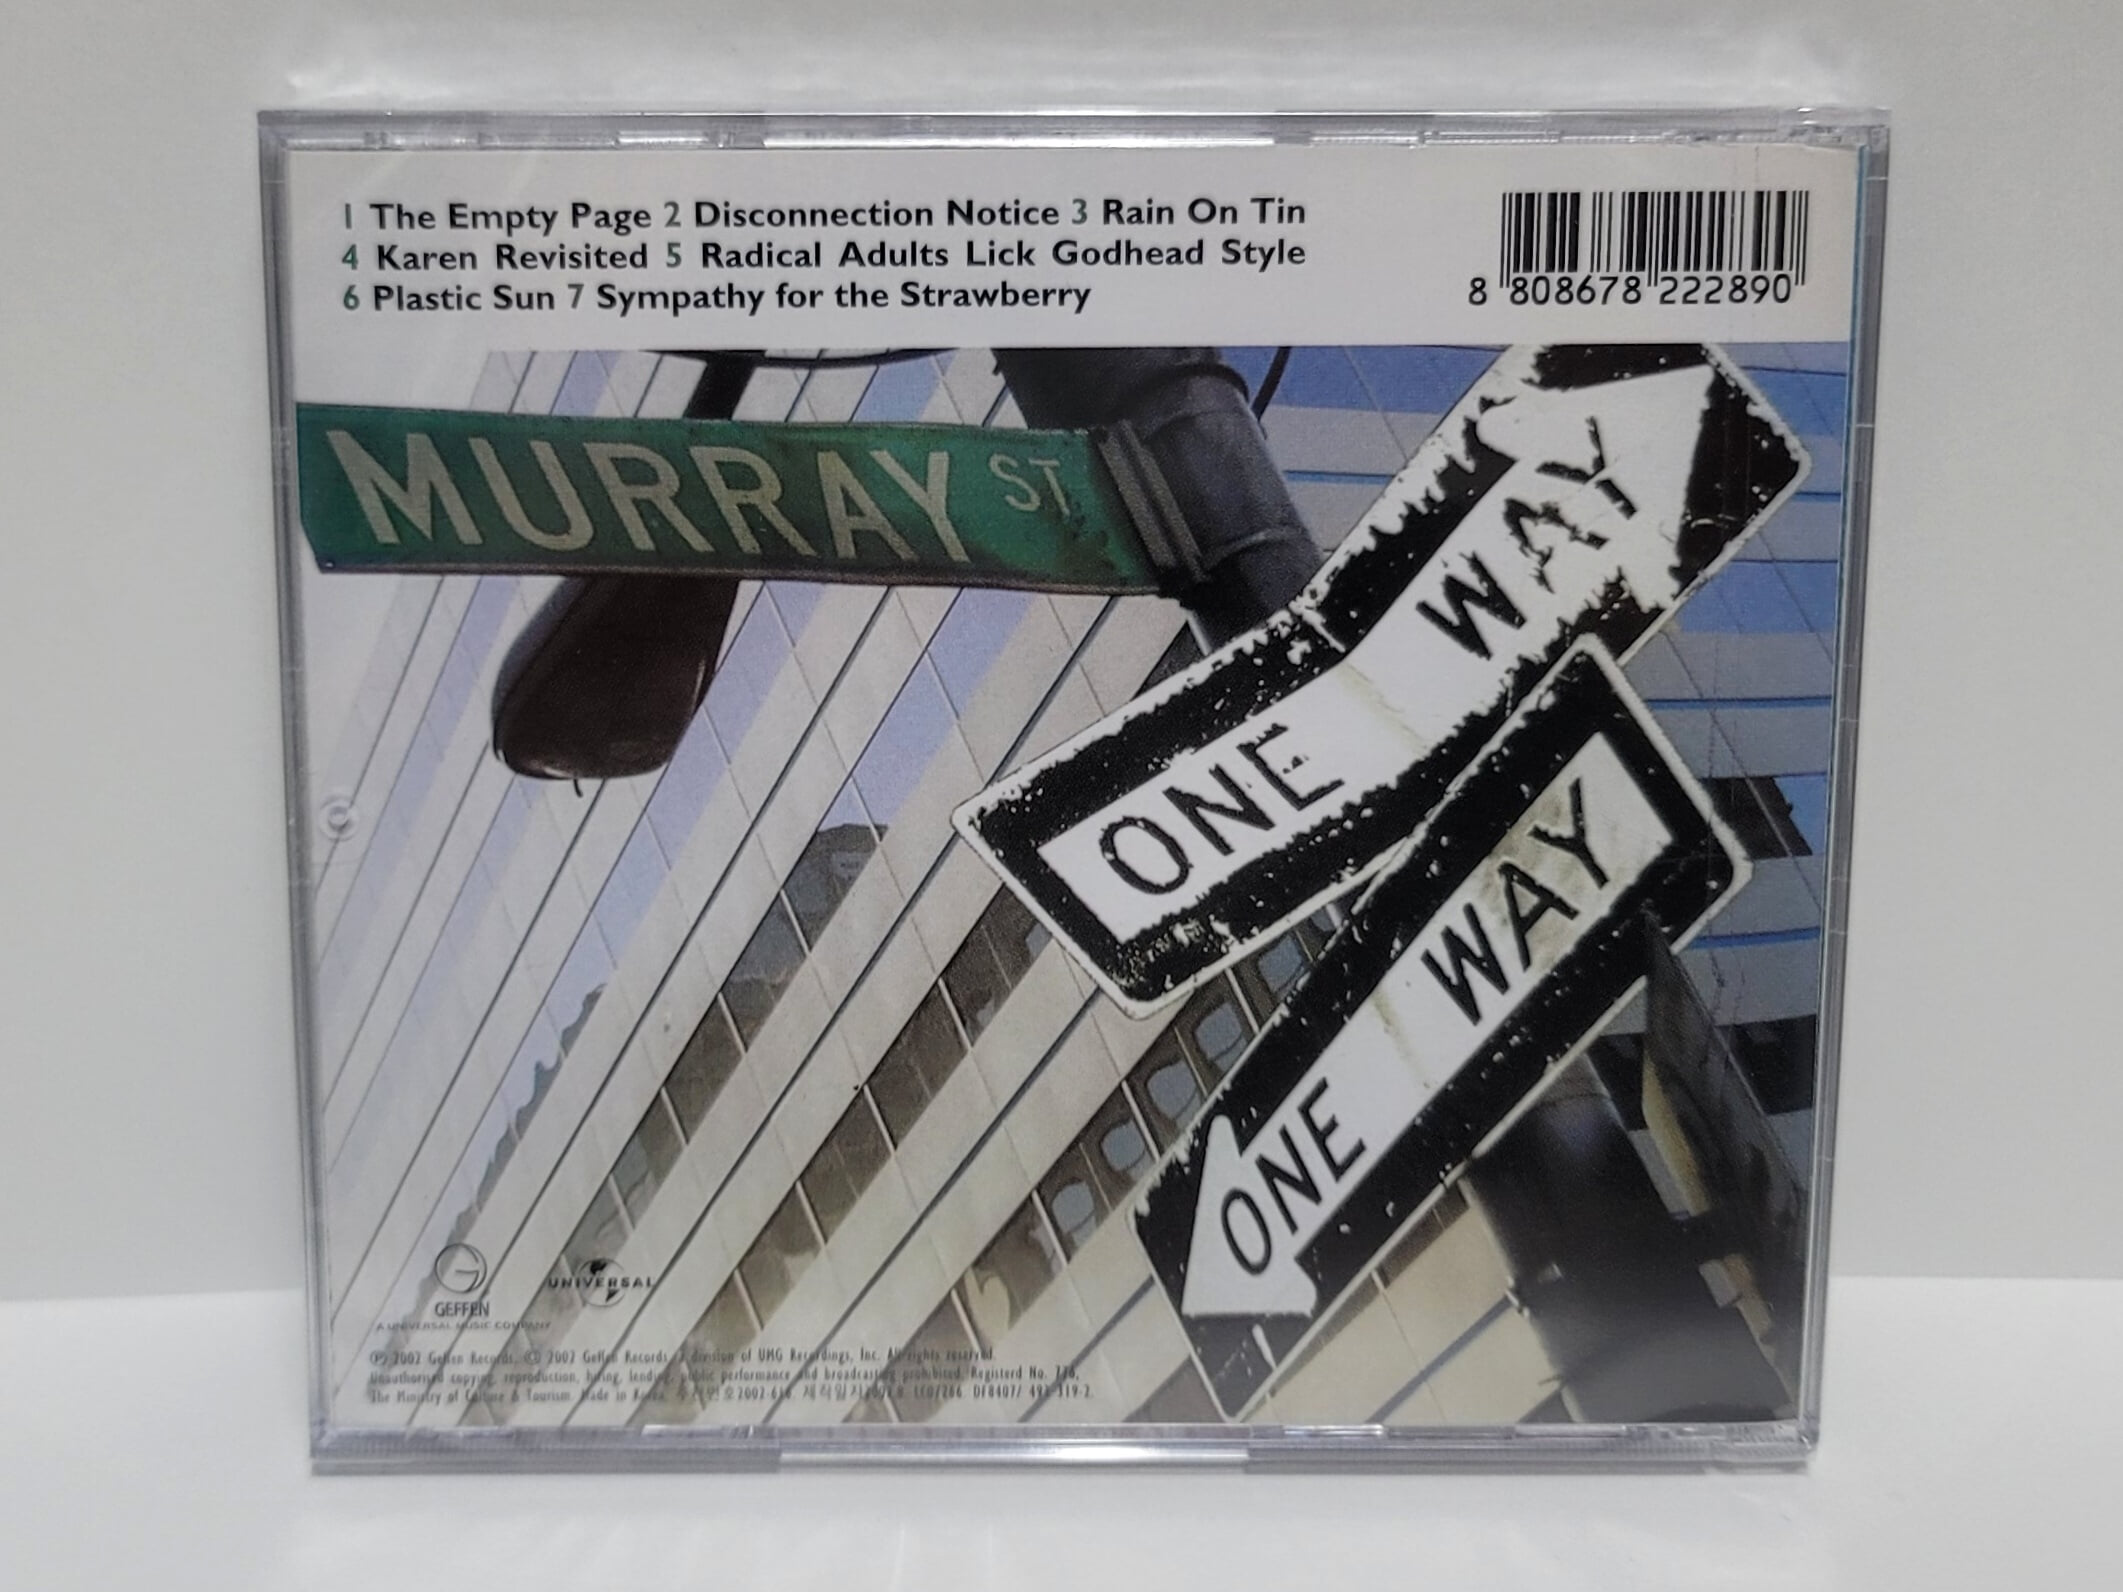 (미개봉 / 희귀 라이센스반) Sonic Youth - Murray Street